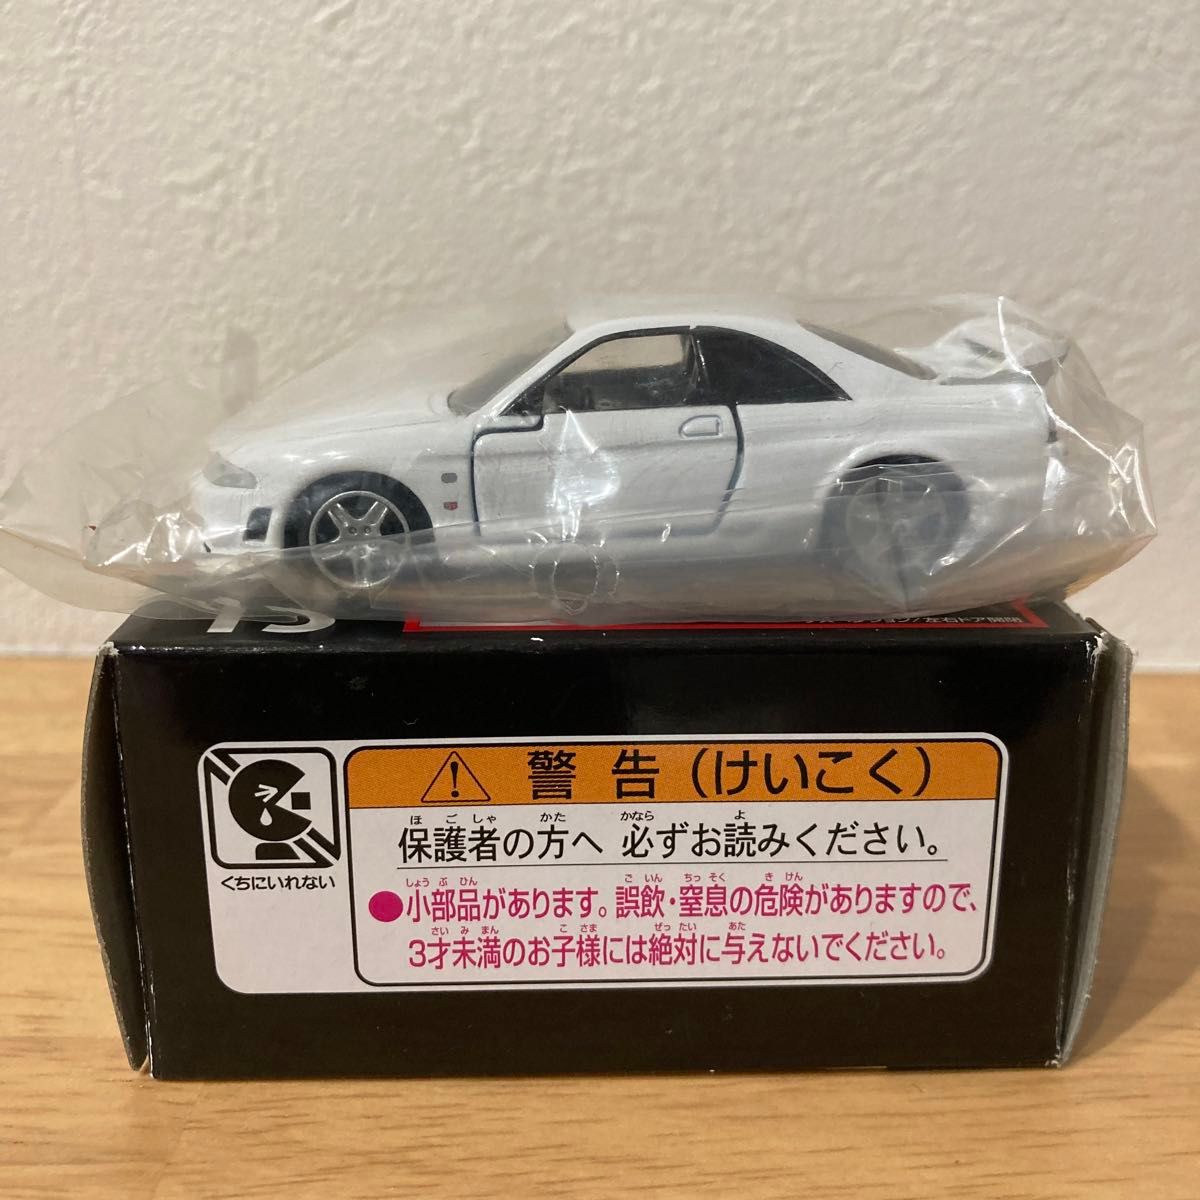 【絶版・廃番】タカラ トミー トミカ トミカプレミアム No.13 NISSAN SKYLINE GT-R R33 スカイライン 